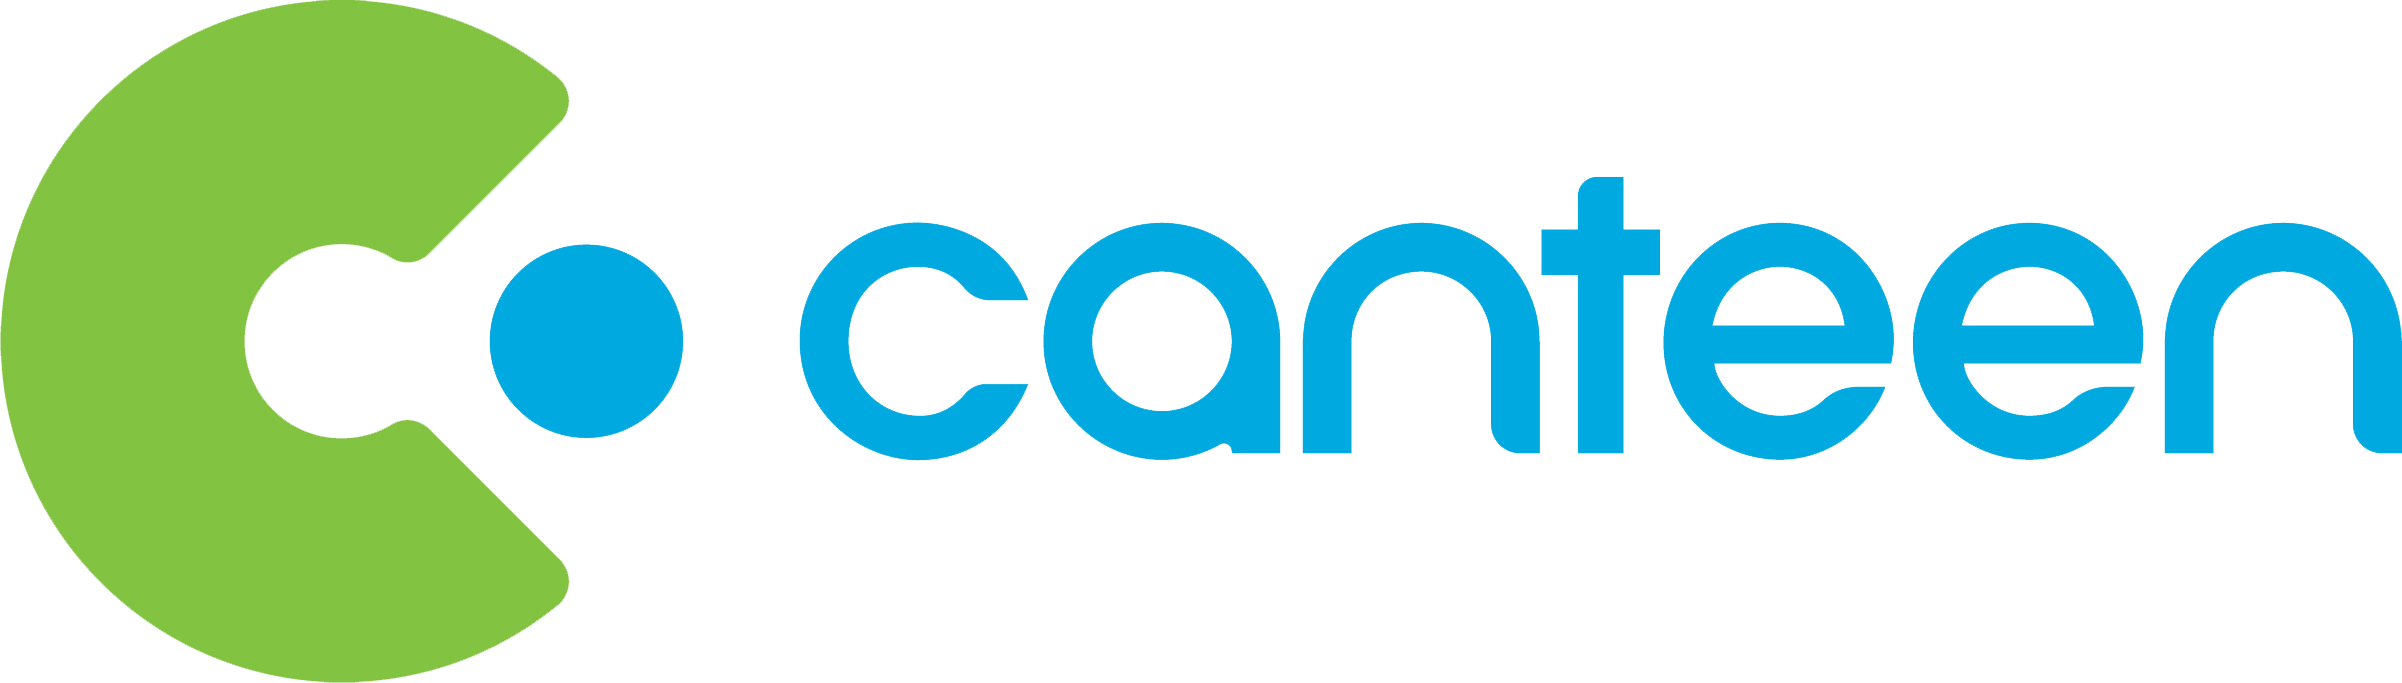 Canteen Australia logo